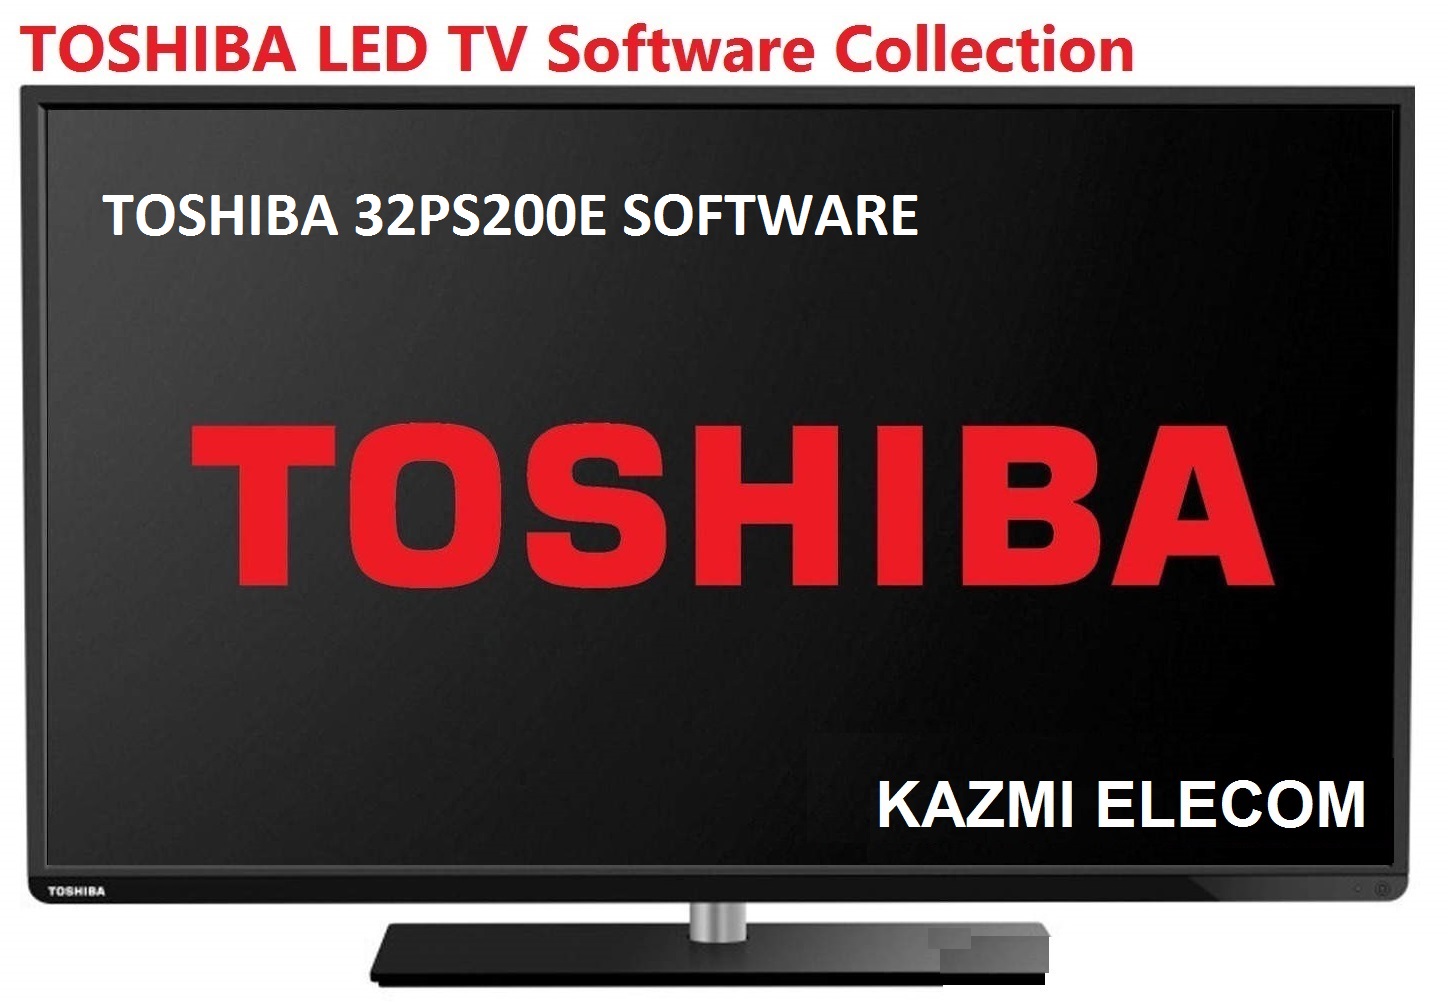 Toshiba 32Ps200E